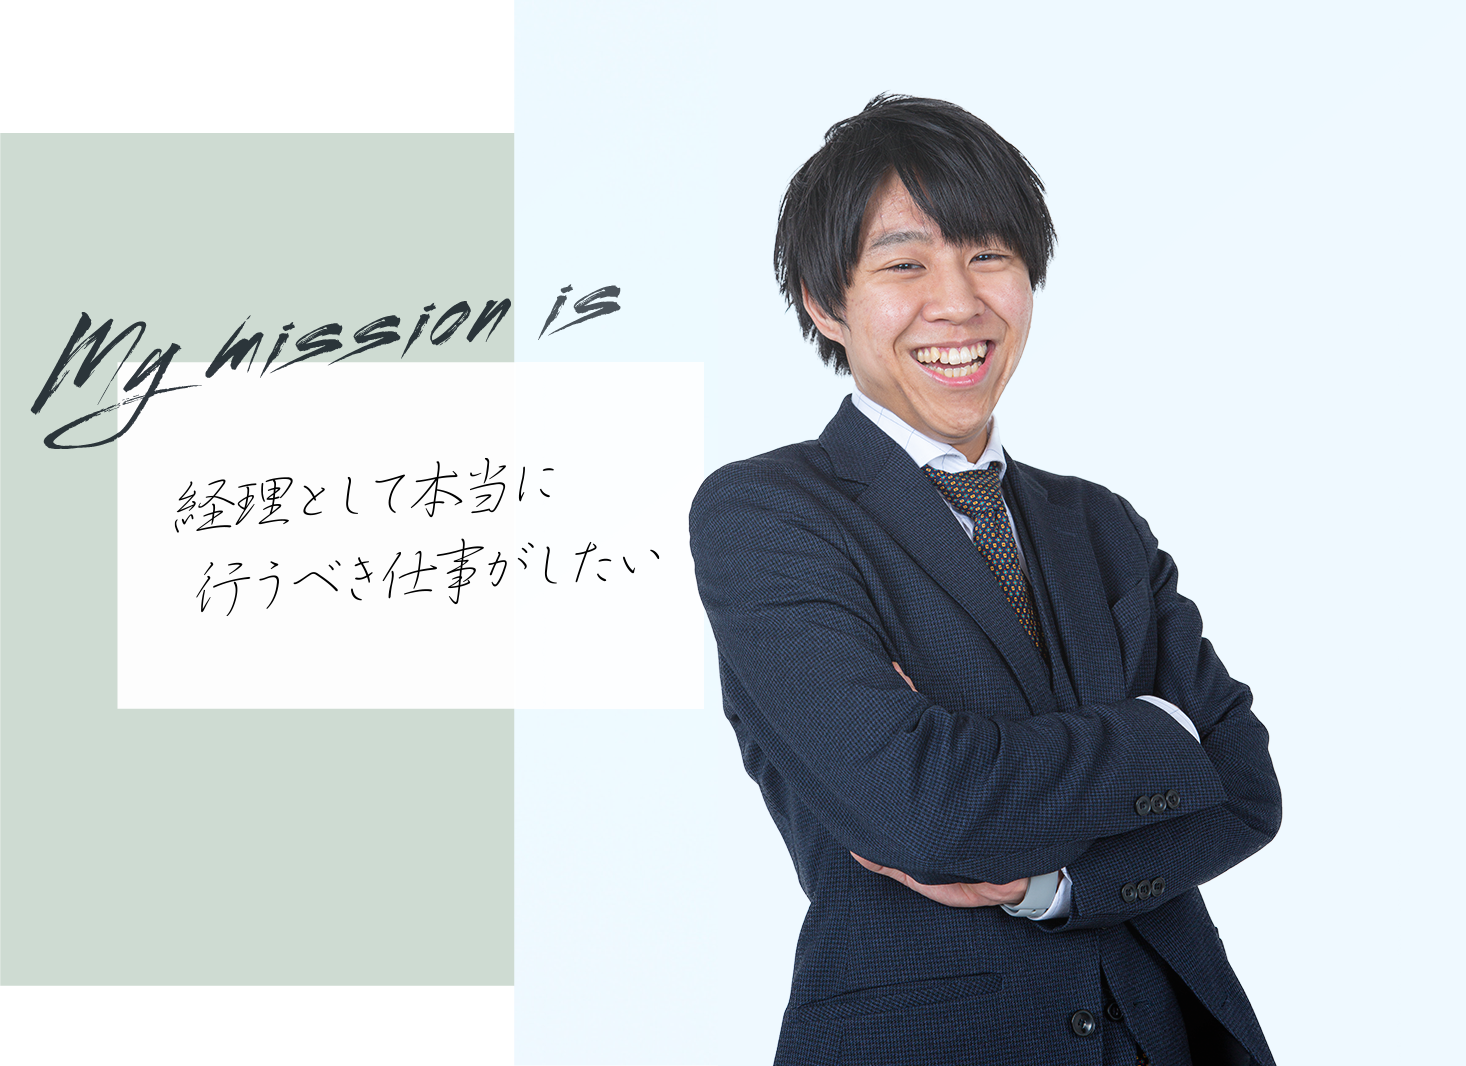 my mission is経理として本当に行うべき仕事がしたい、澤田 航太